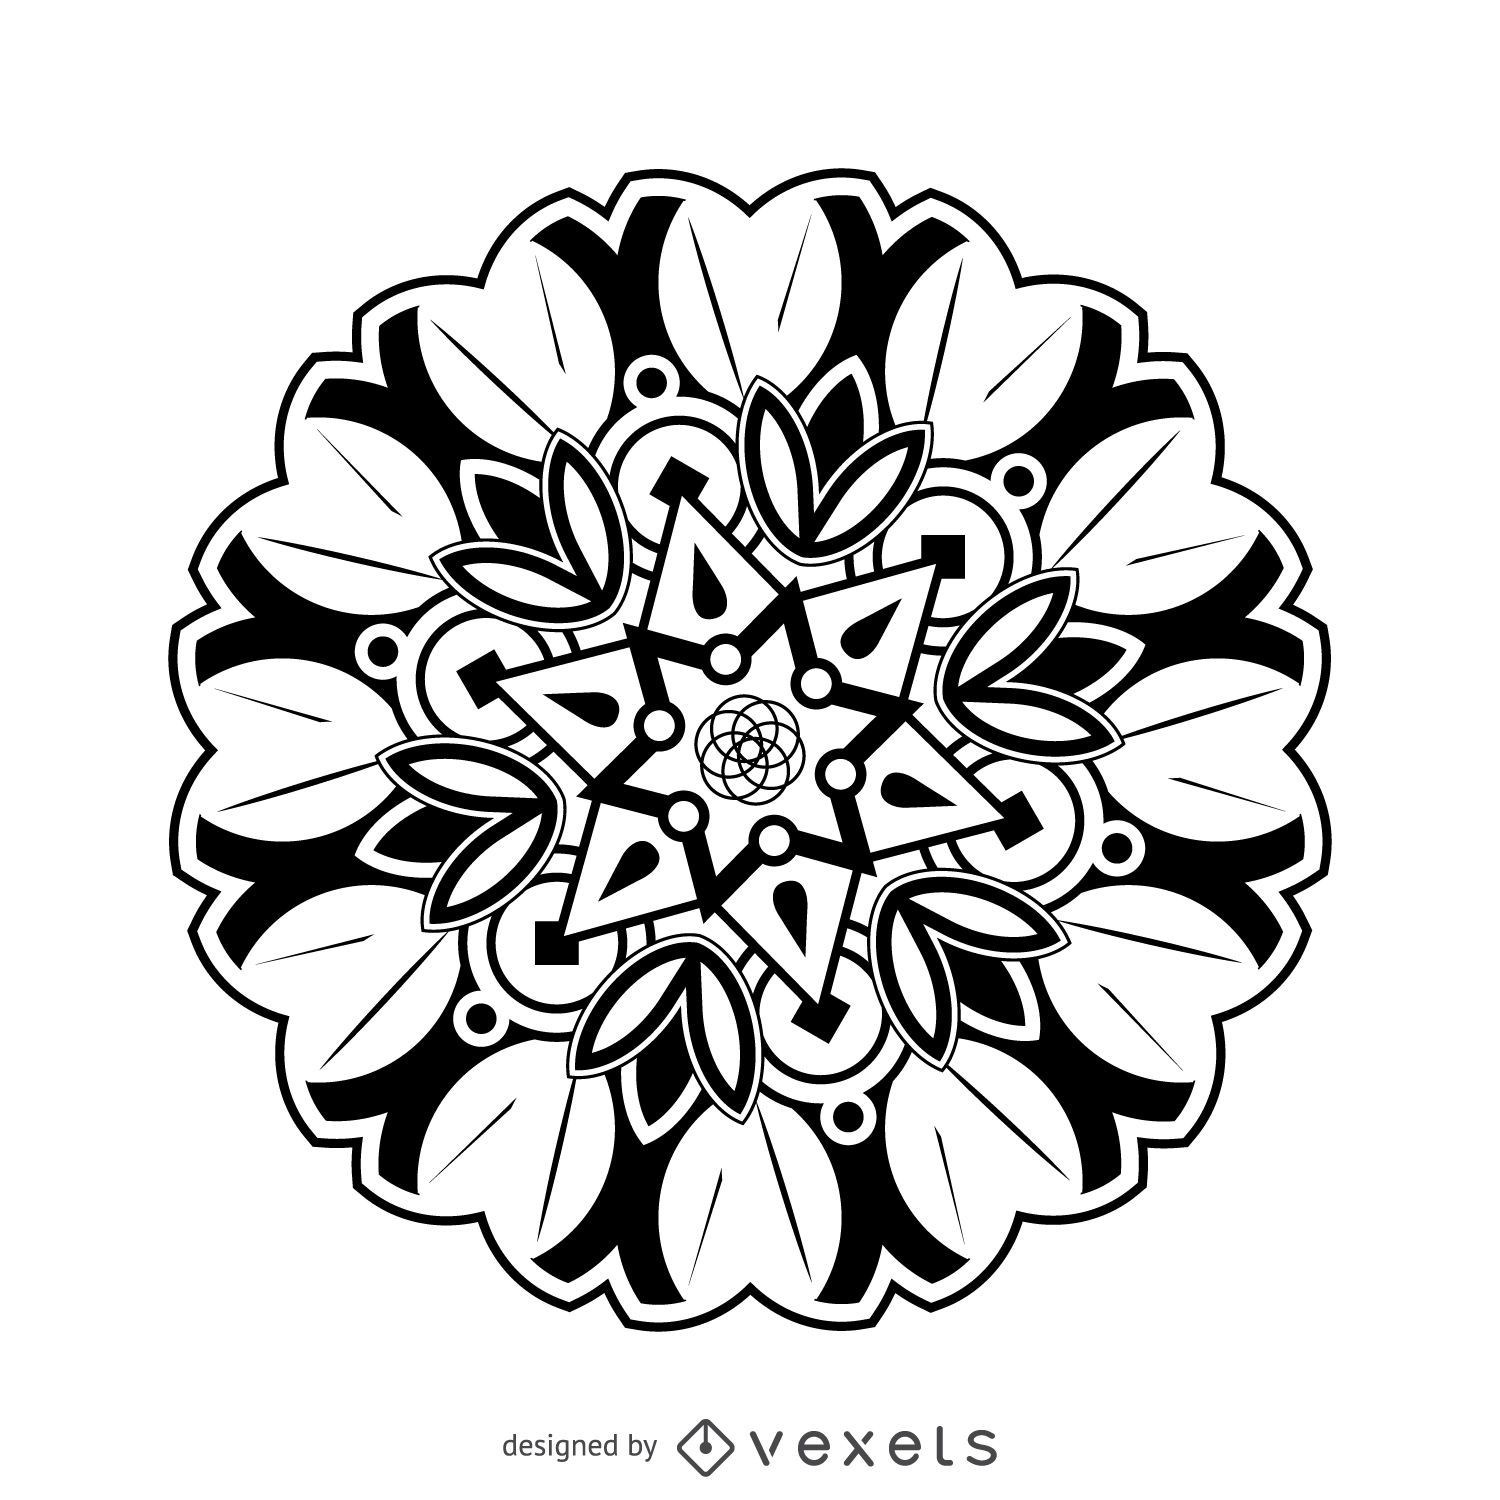 Dibujo de mandala de flores